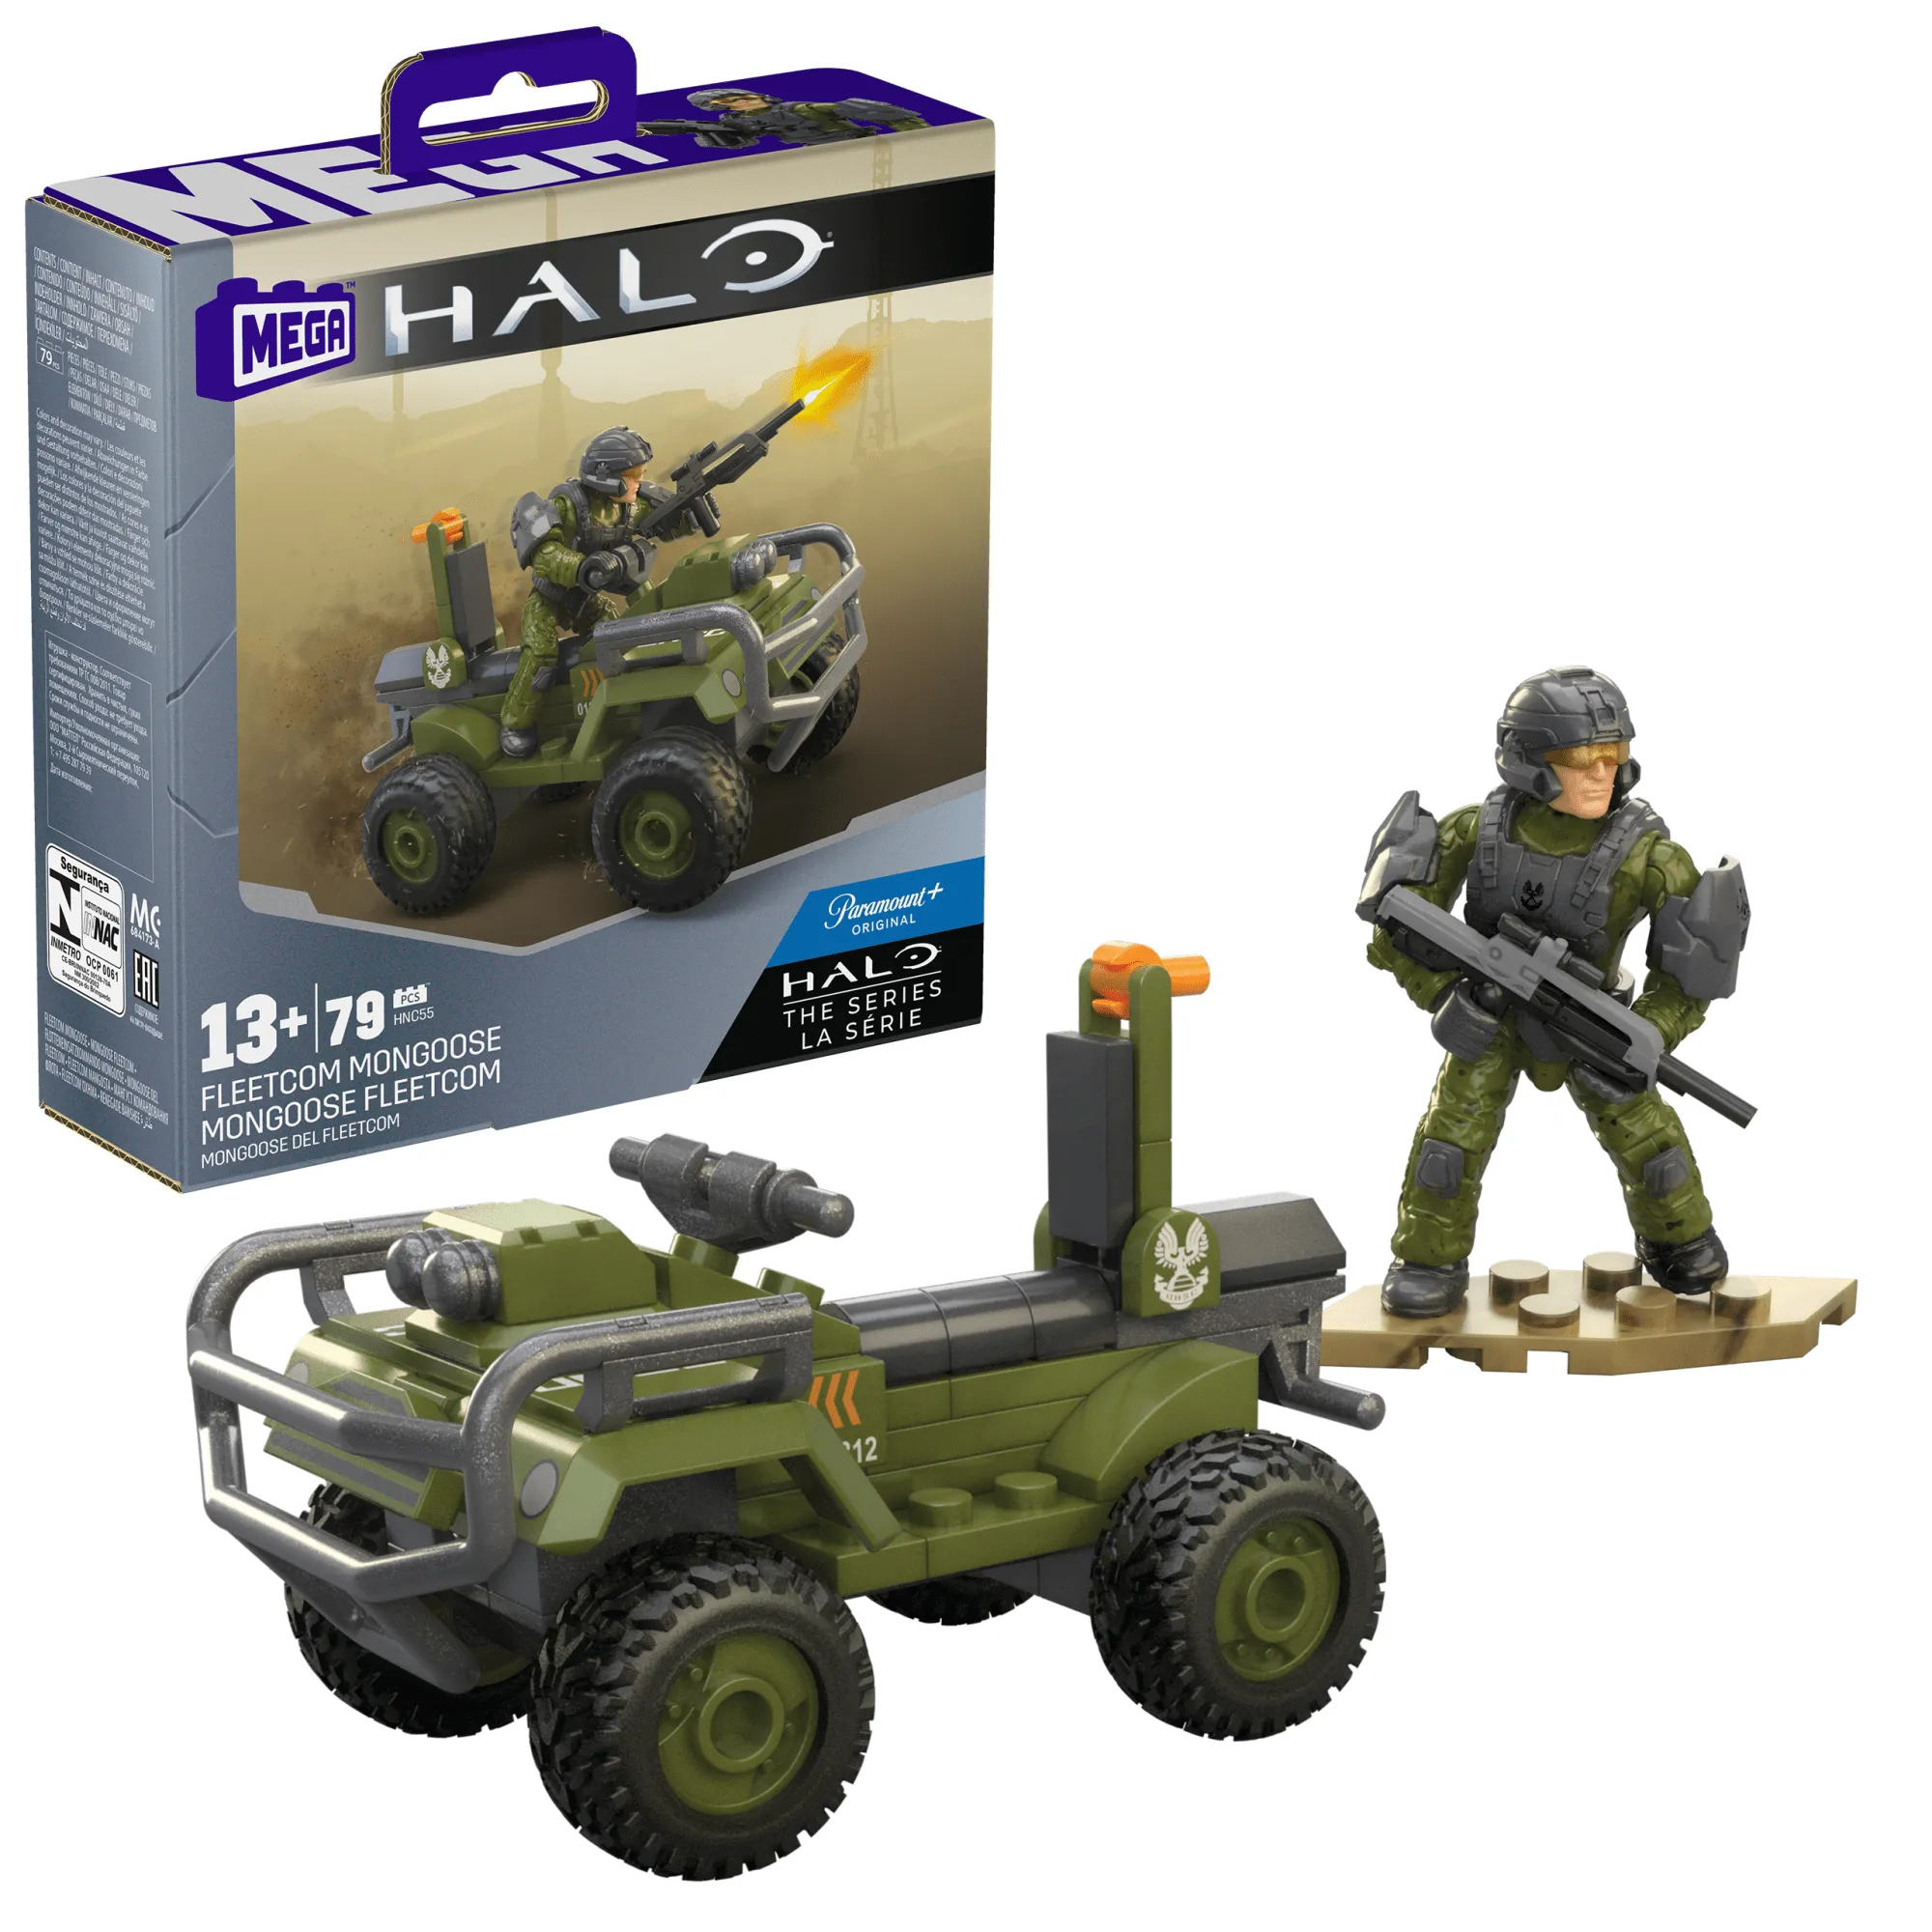 Halo Bauspielzeug Set, FLEETCOM Mongoose ATV Fahrzeug mit 79 Teilen, 2 beweglichen Mikro-Actionfiguren und Zubehör Gallery